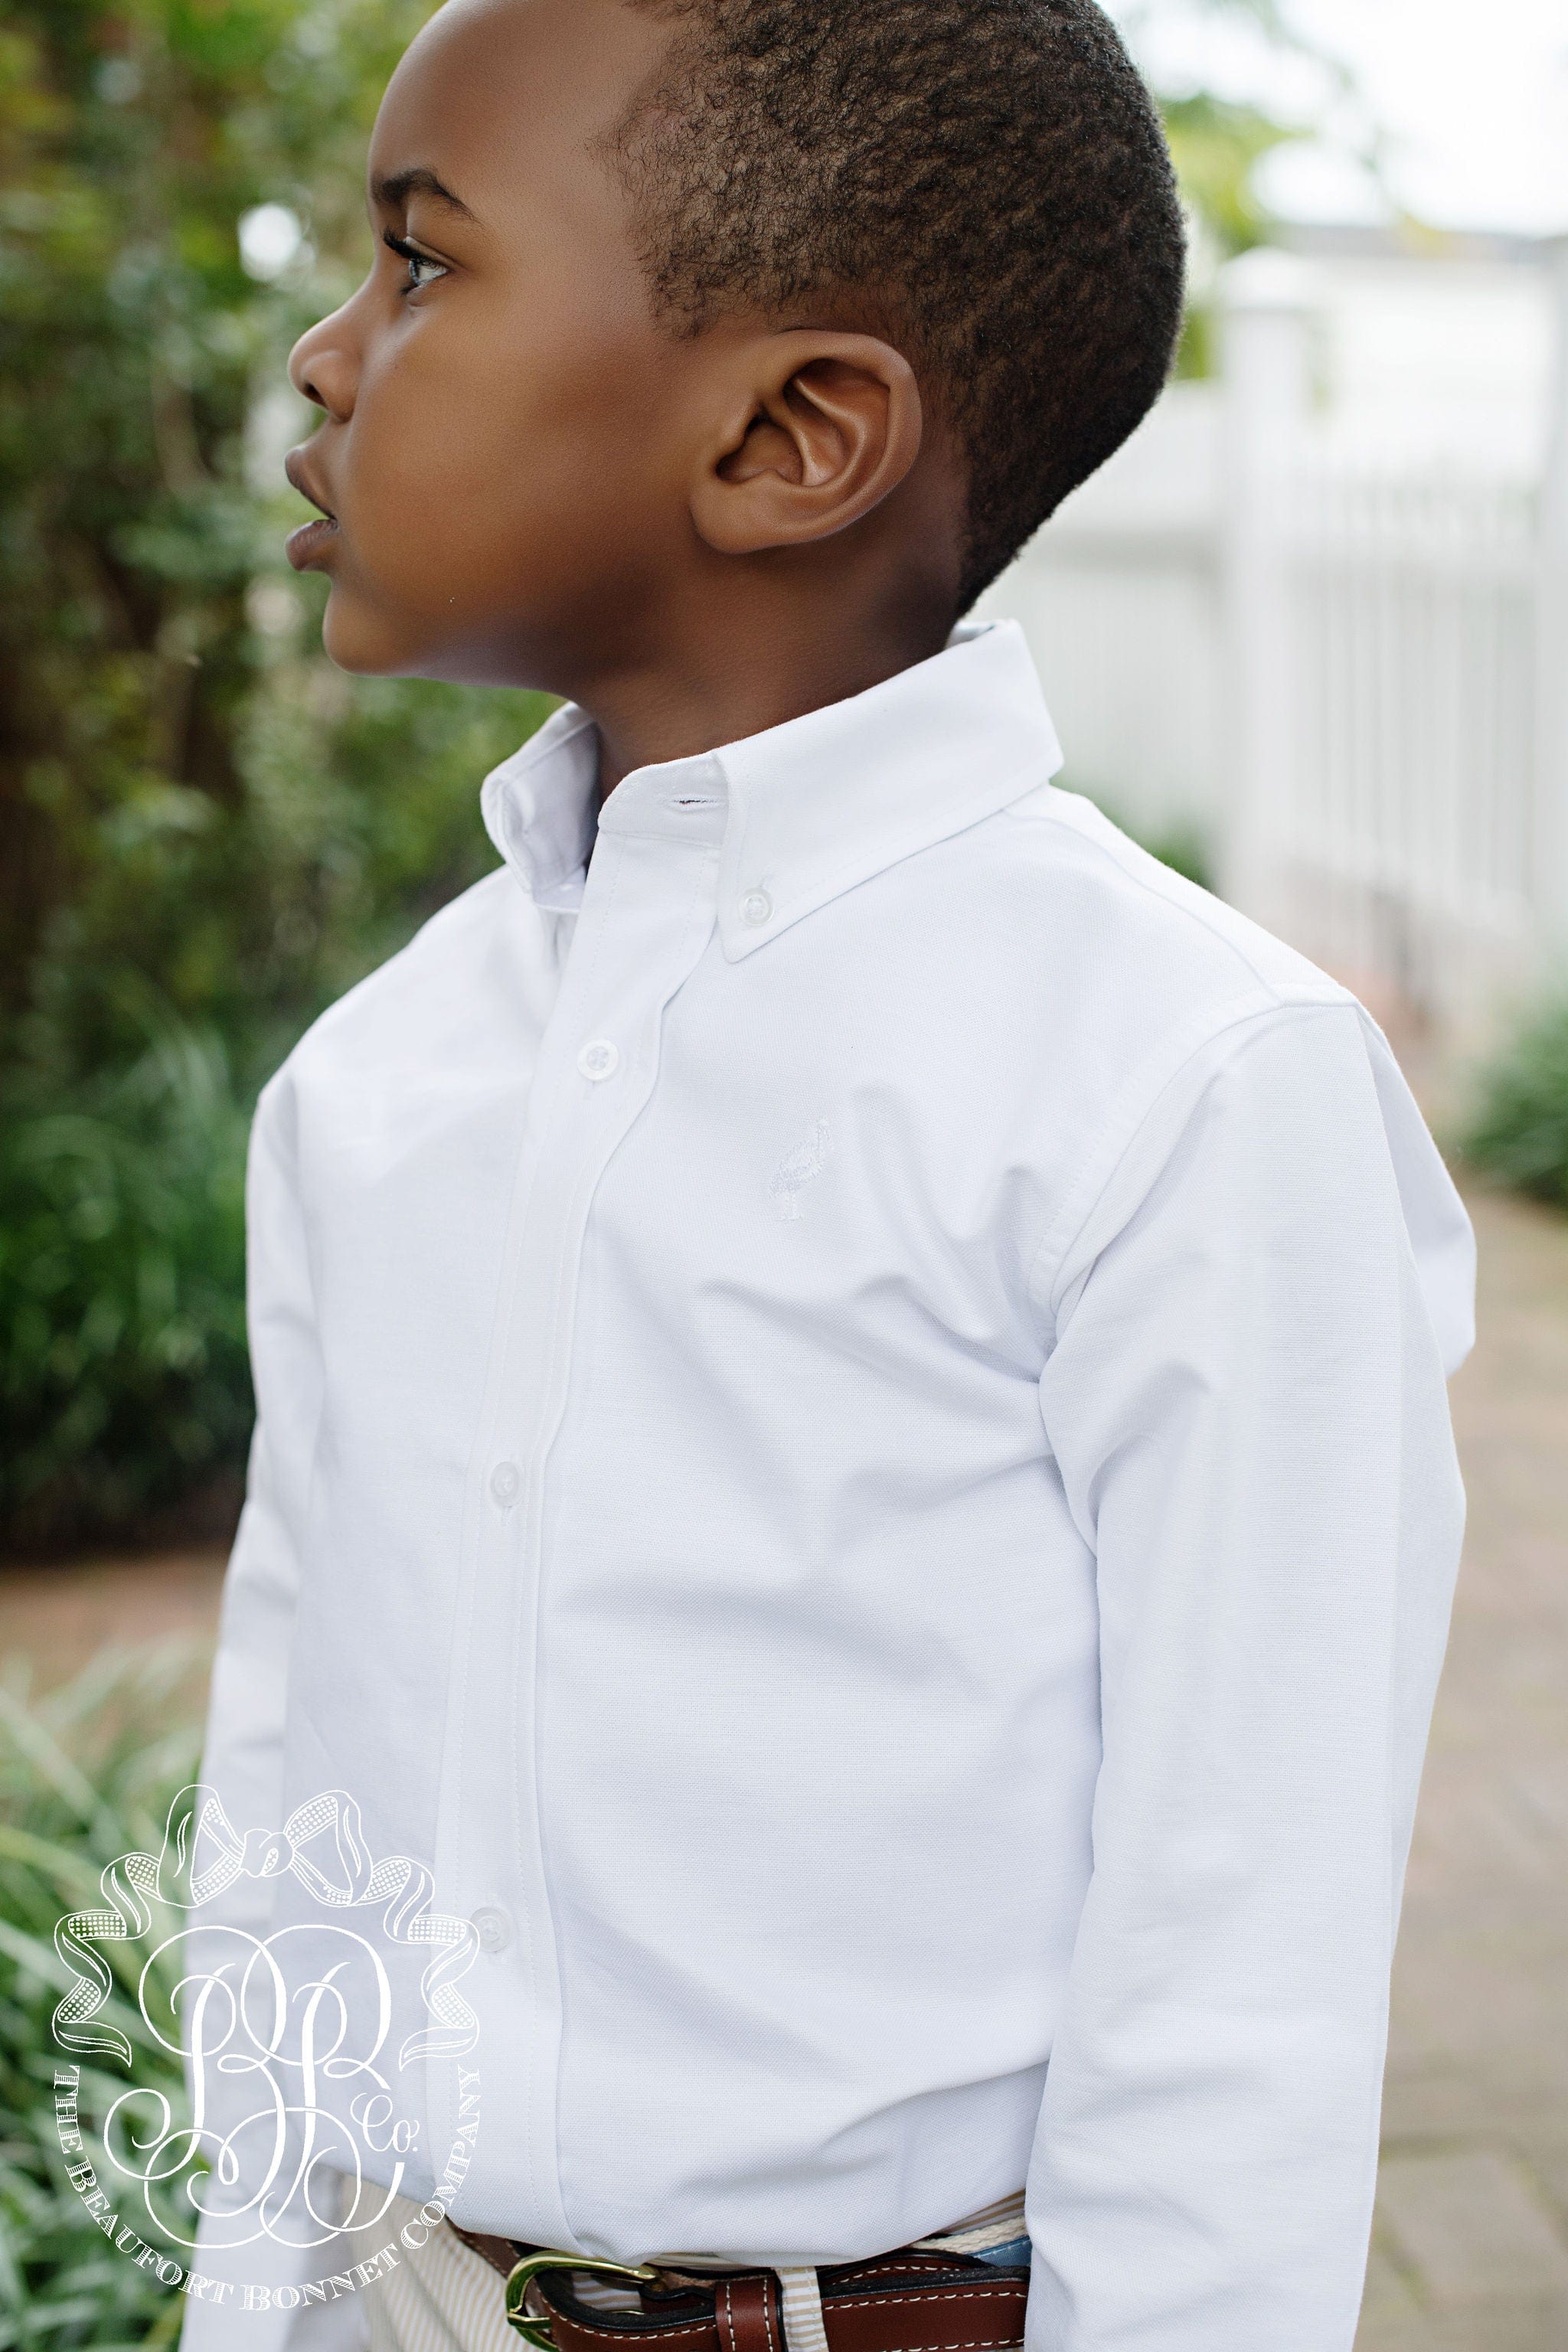 Beaufort Bonnet Company Beaufort Bonnet Company Deans List Dress Shirt - Little Miss Muffin Children & Home